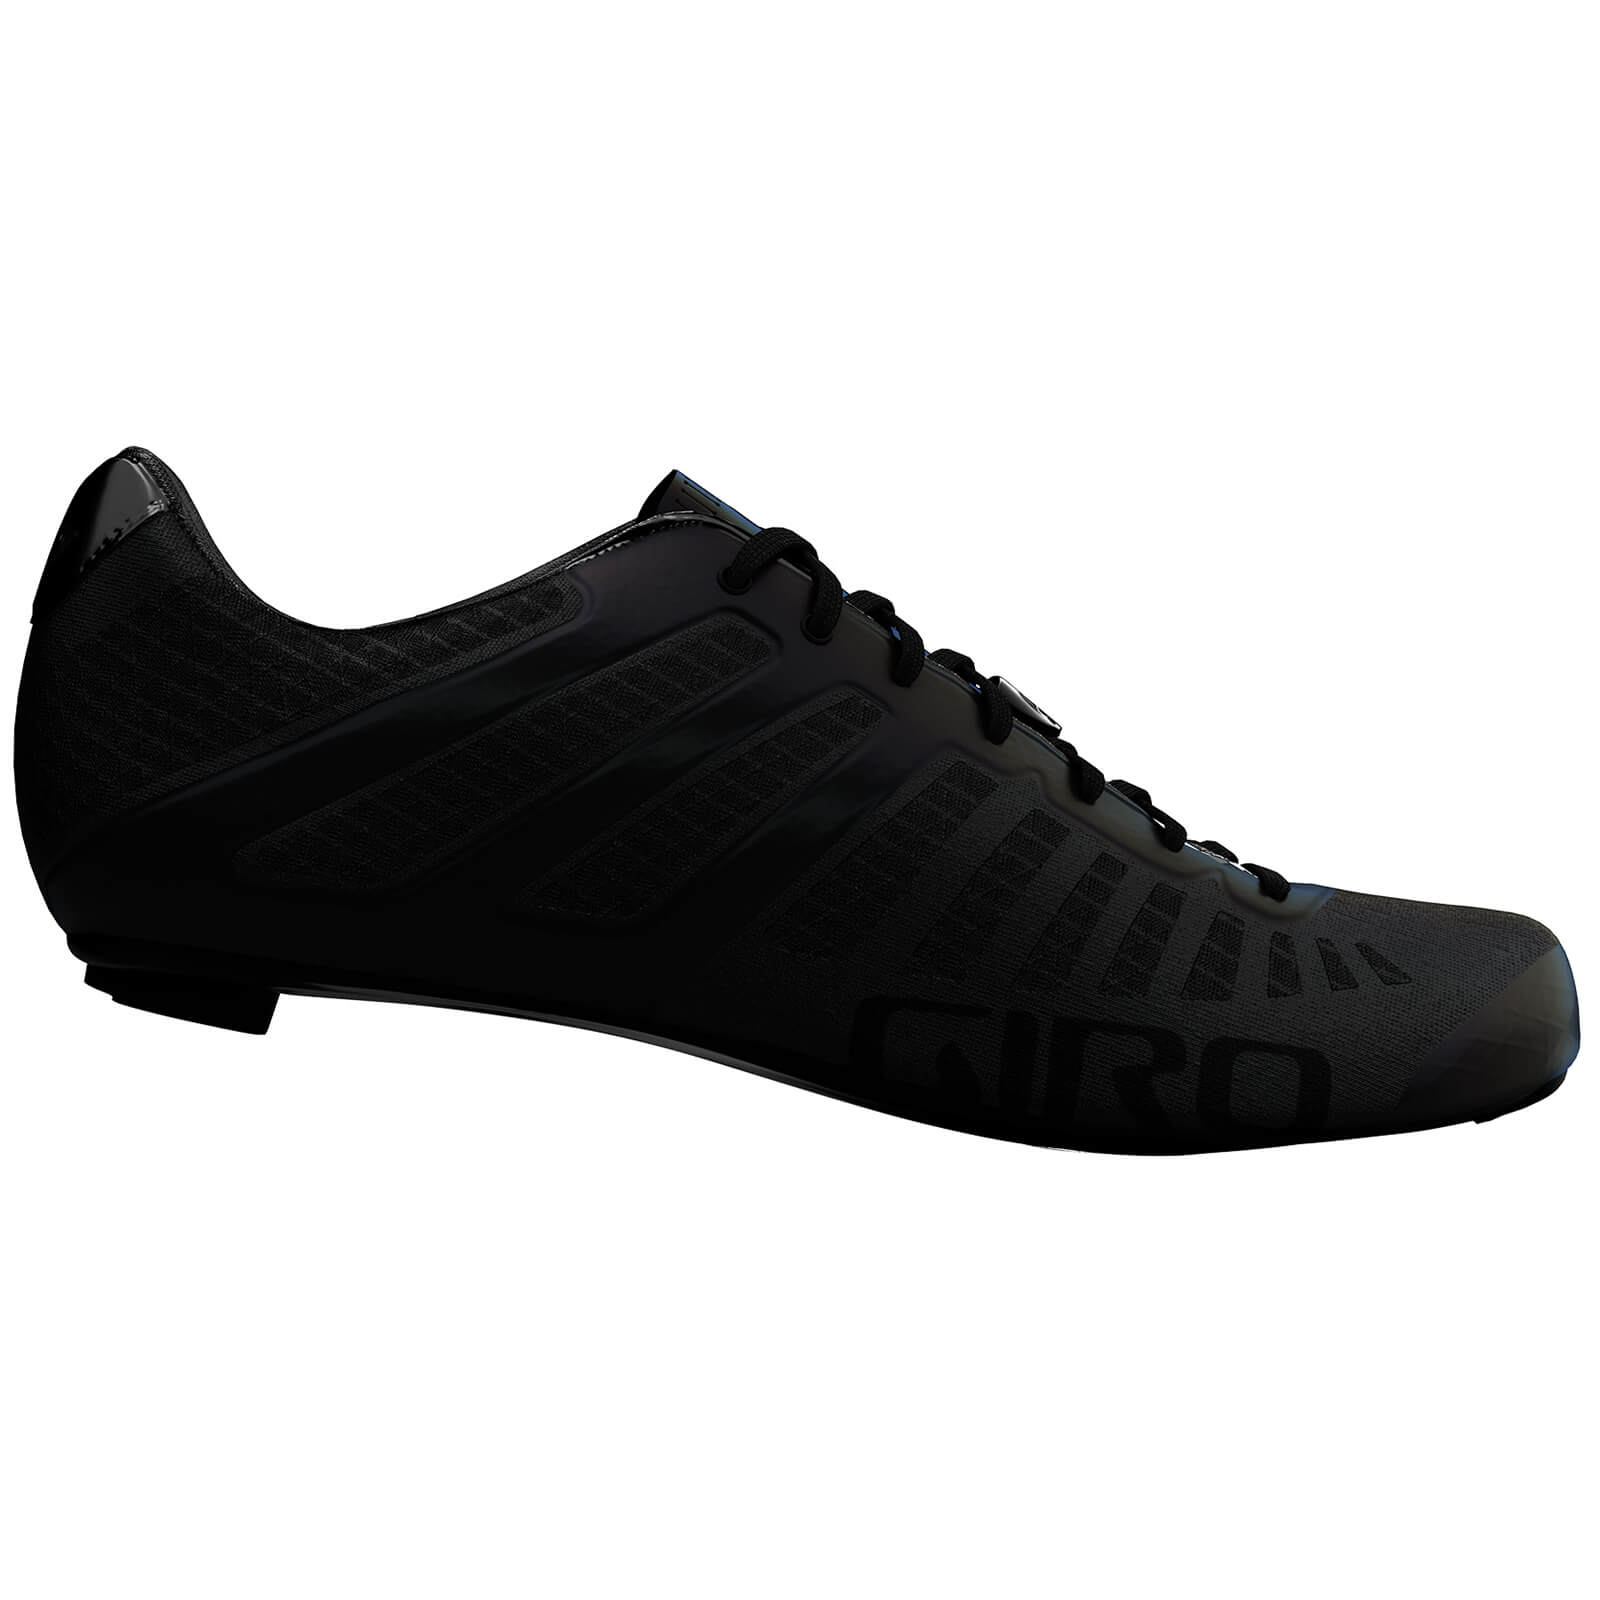 Giro Empire SLX Road Shoe - EU 45 - Carbon Black